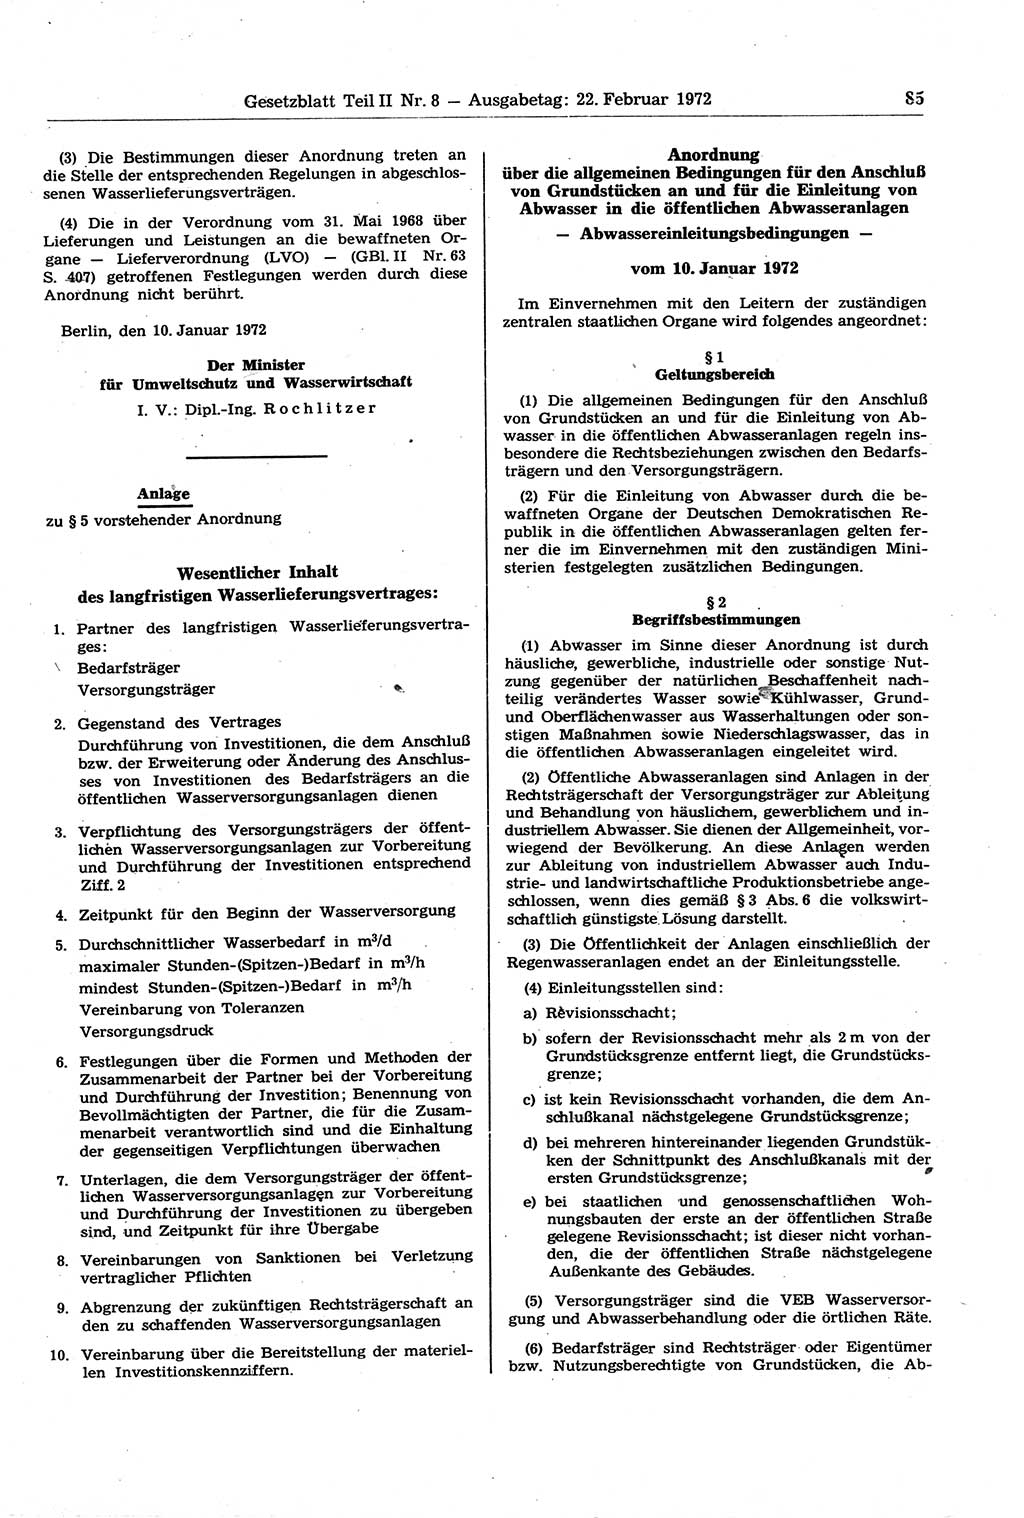 Gesetzblatt (GBl.) der Deutschen Demokratischen Republik (DDR) Teil ⅠⅠ 1972, Seite 85 (GBl. DDR ⅠⅠ 1972, S. 85)